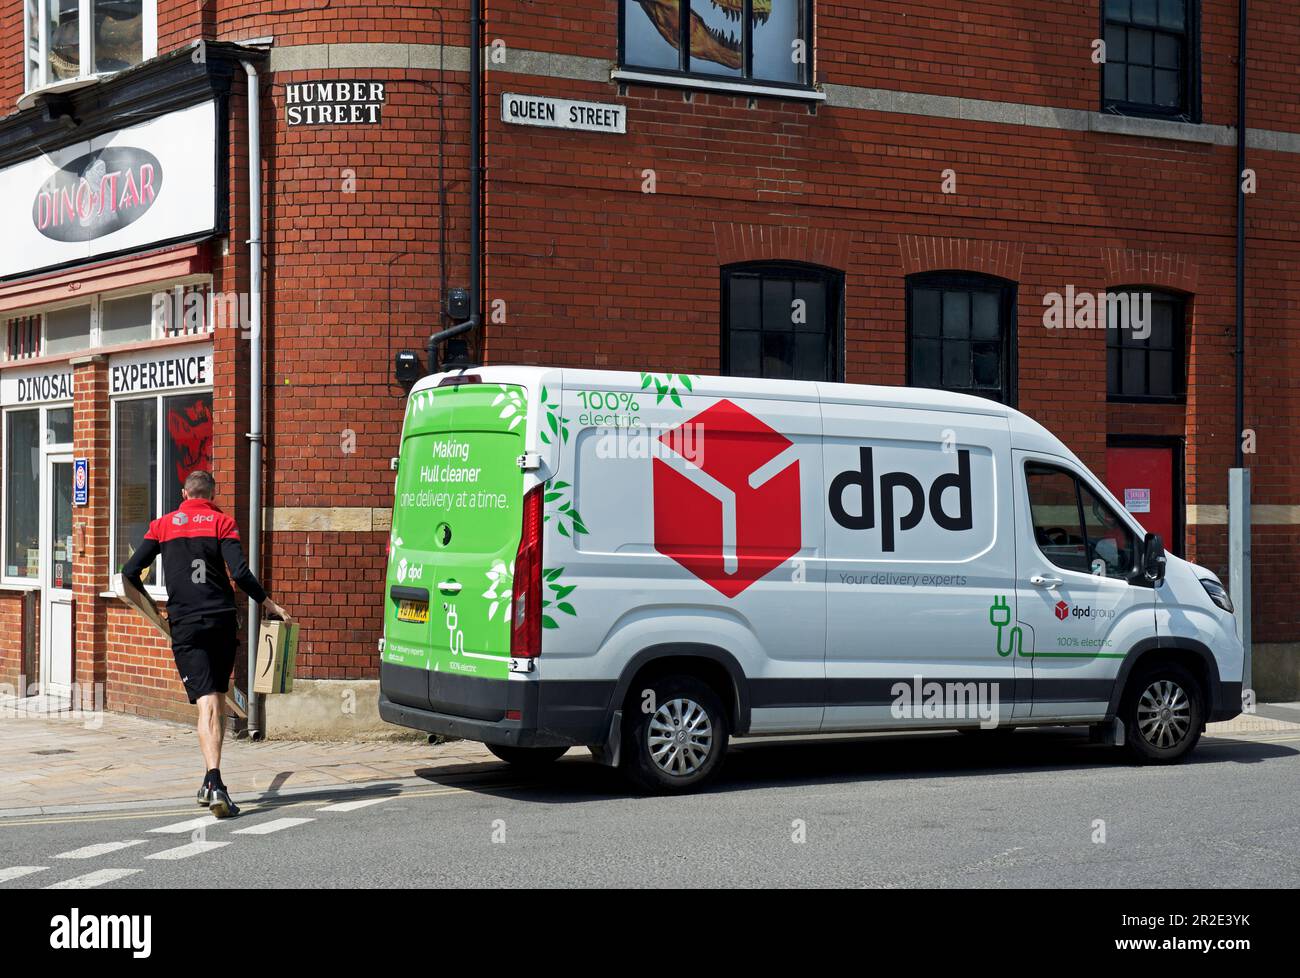 Camionnette de livraison DPD, et chauffeur, à Hull, Humberside, East Yorkshire, Anglais Royaume-Uni Banque D'Images